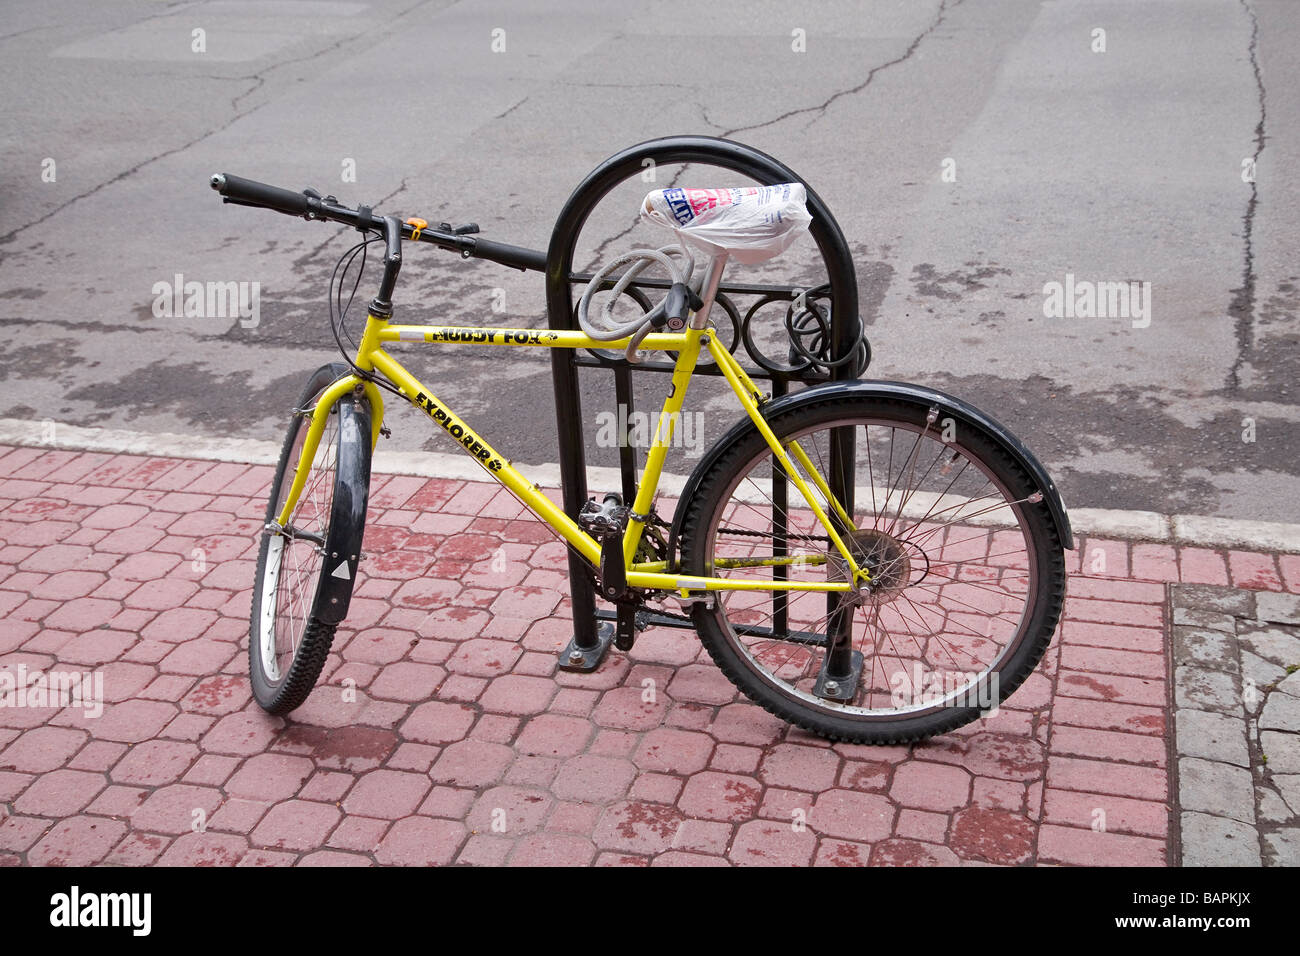 Un vélo verrouillé sur un porte vélo avec un vélo de verrouillage le siège est recouvert d'un sac plastique pour le protéger de la pluie Banque D'Images